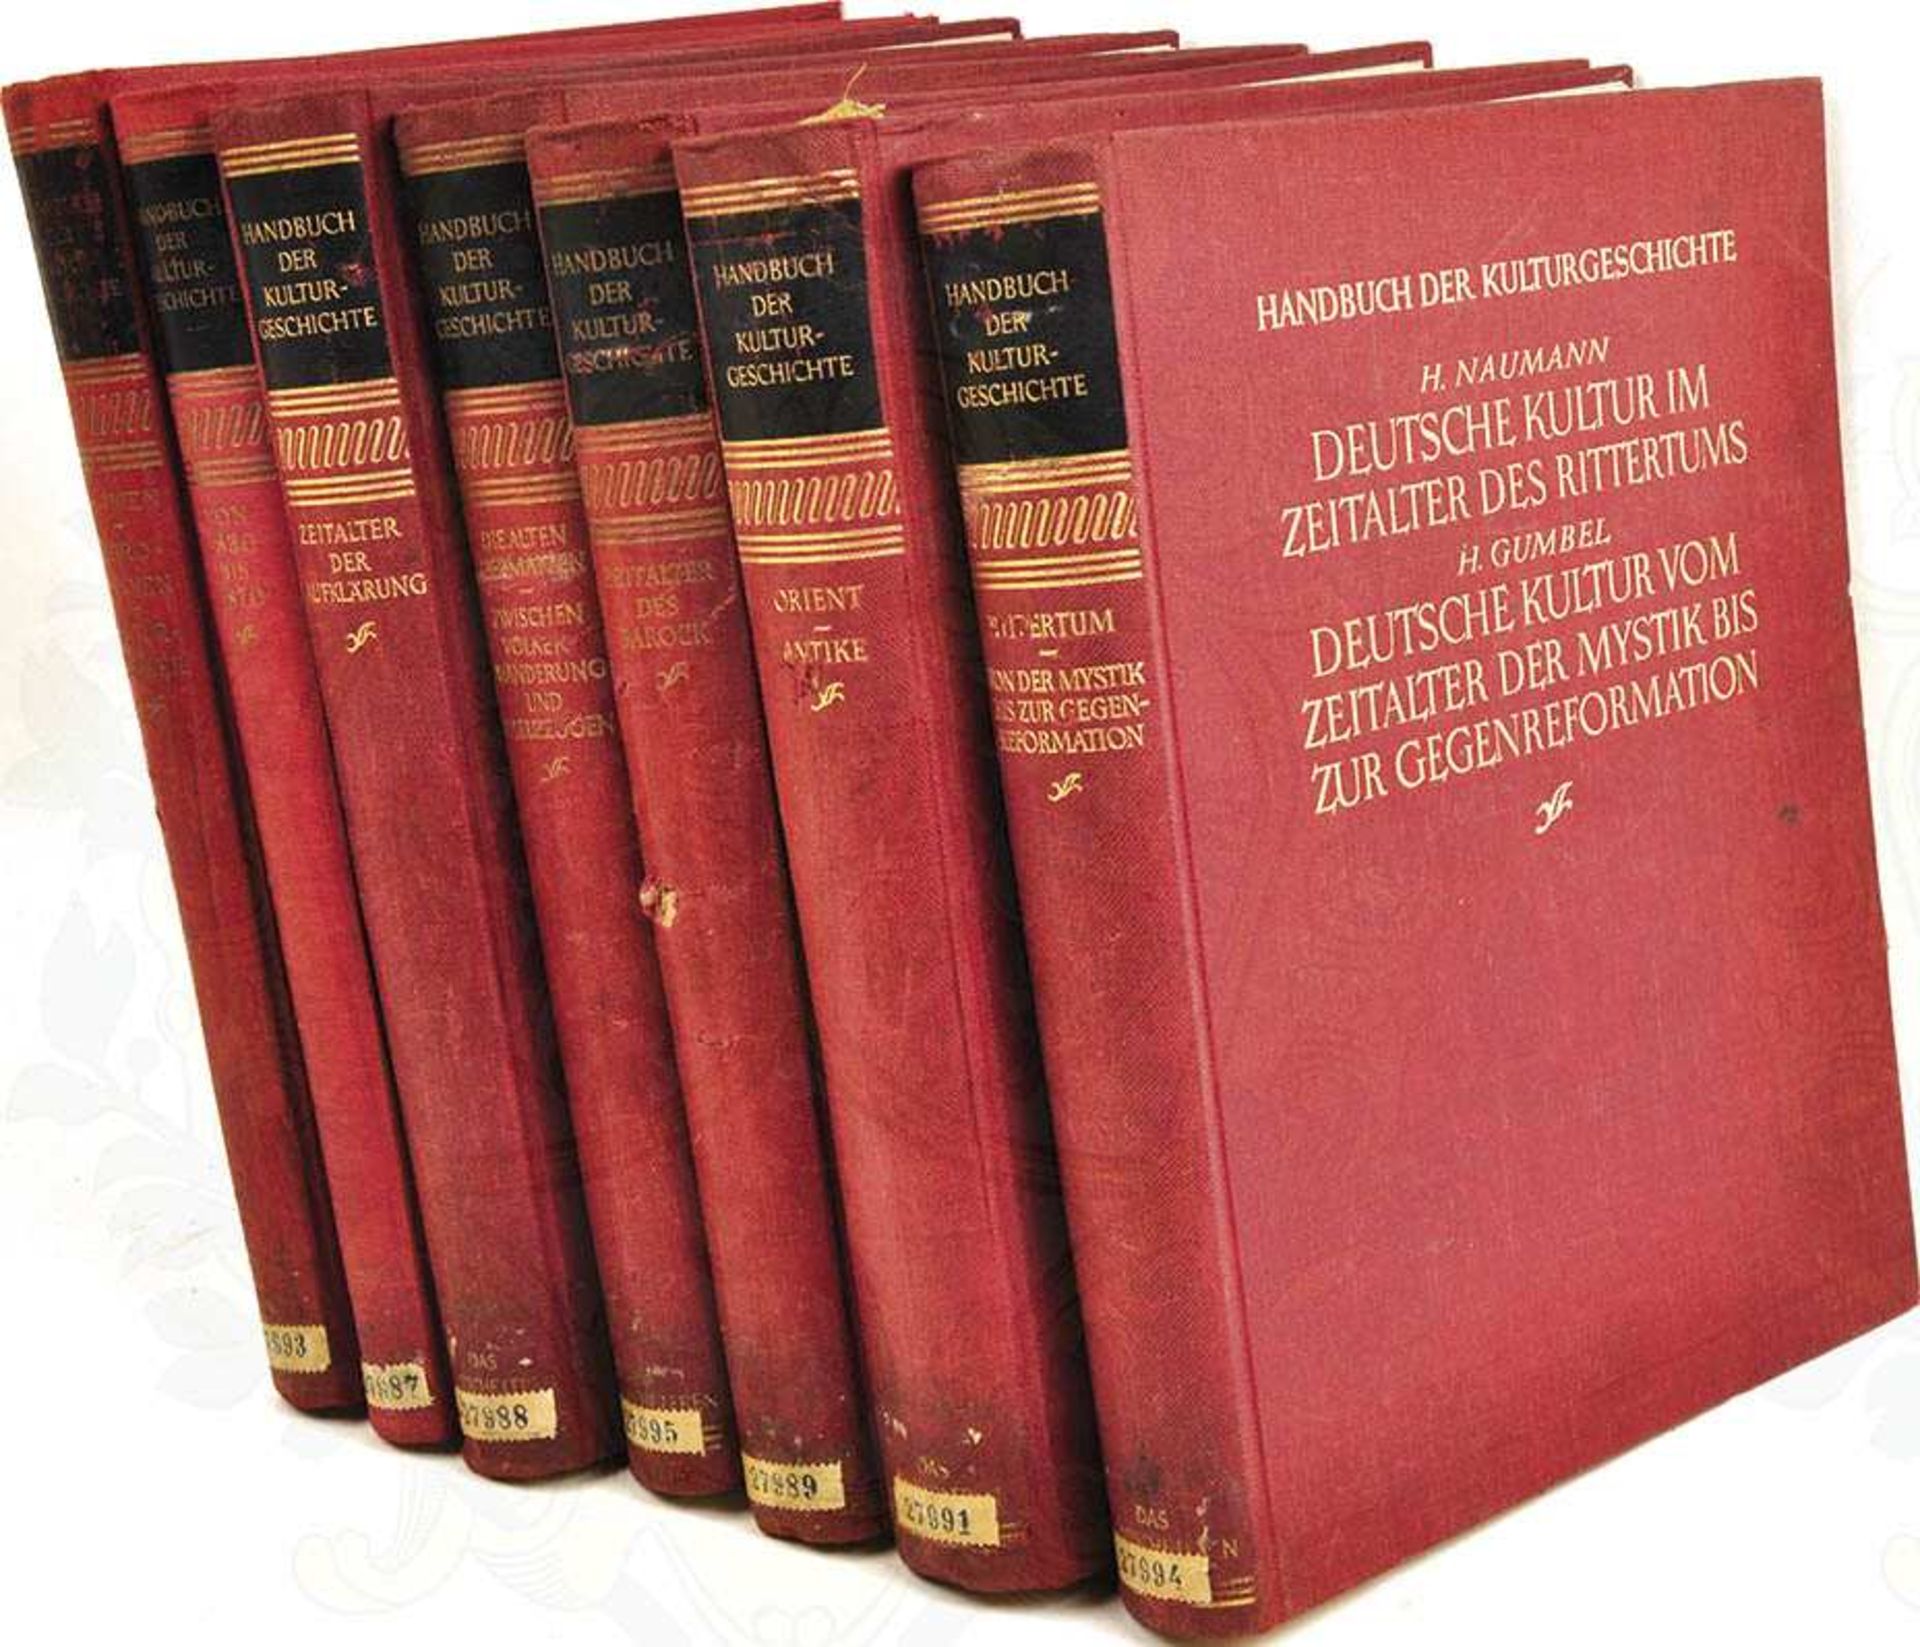 HANDBUCH DER KULTURGESCHICHTE, Dr. H. Kindermann u. a., 12 Teile in 7 Bänden, Potsdam 1935-1939,